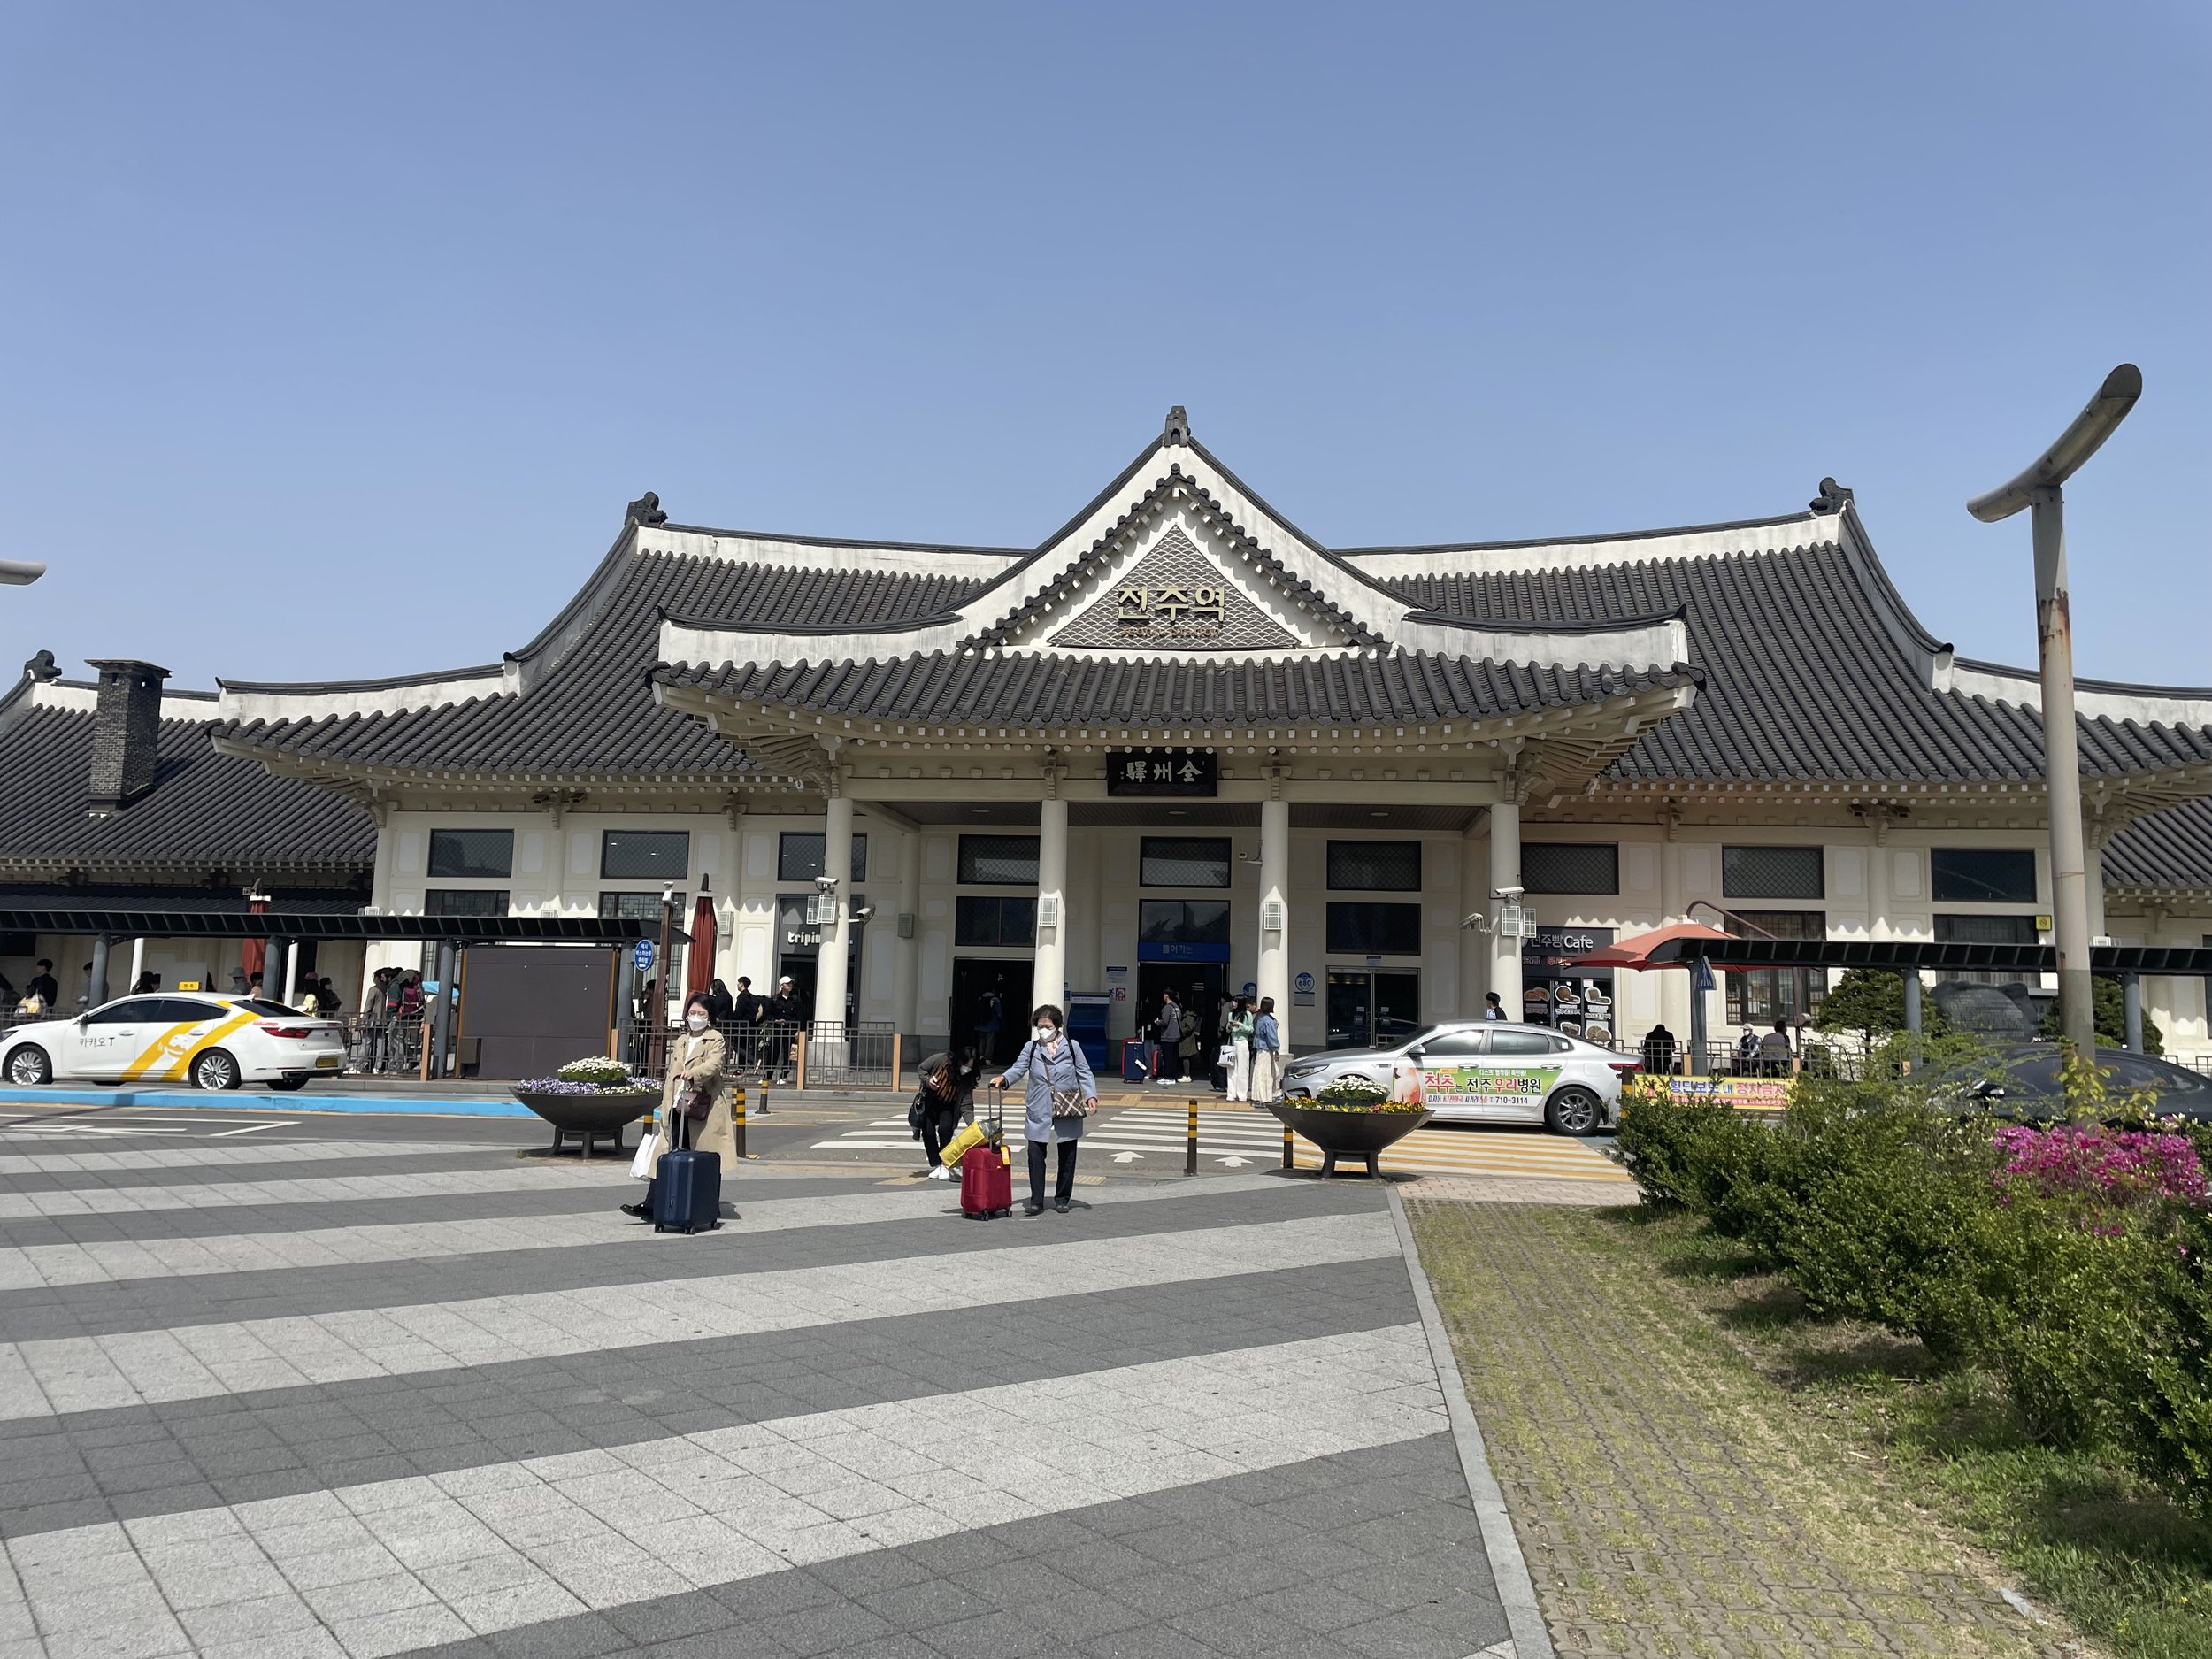 Jeonju Station